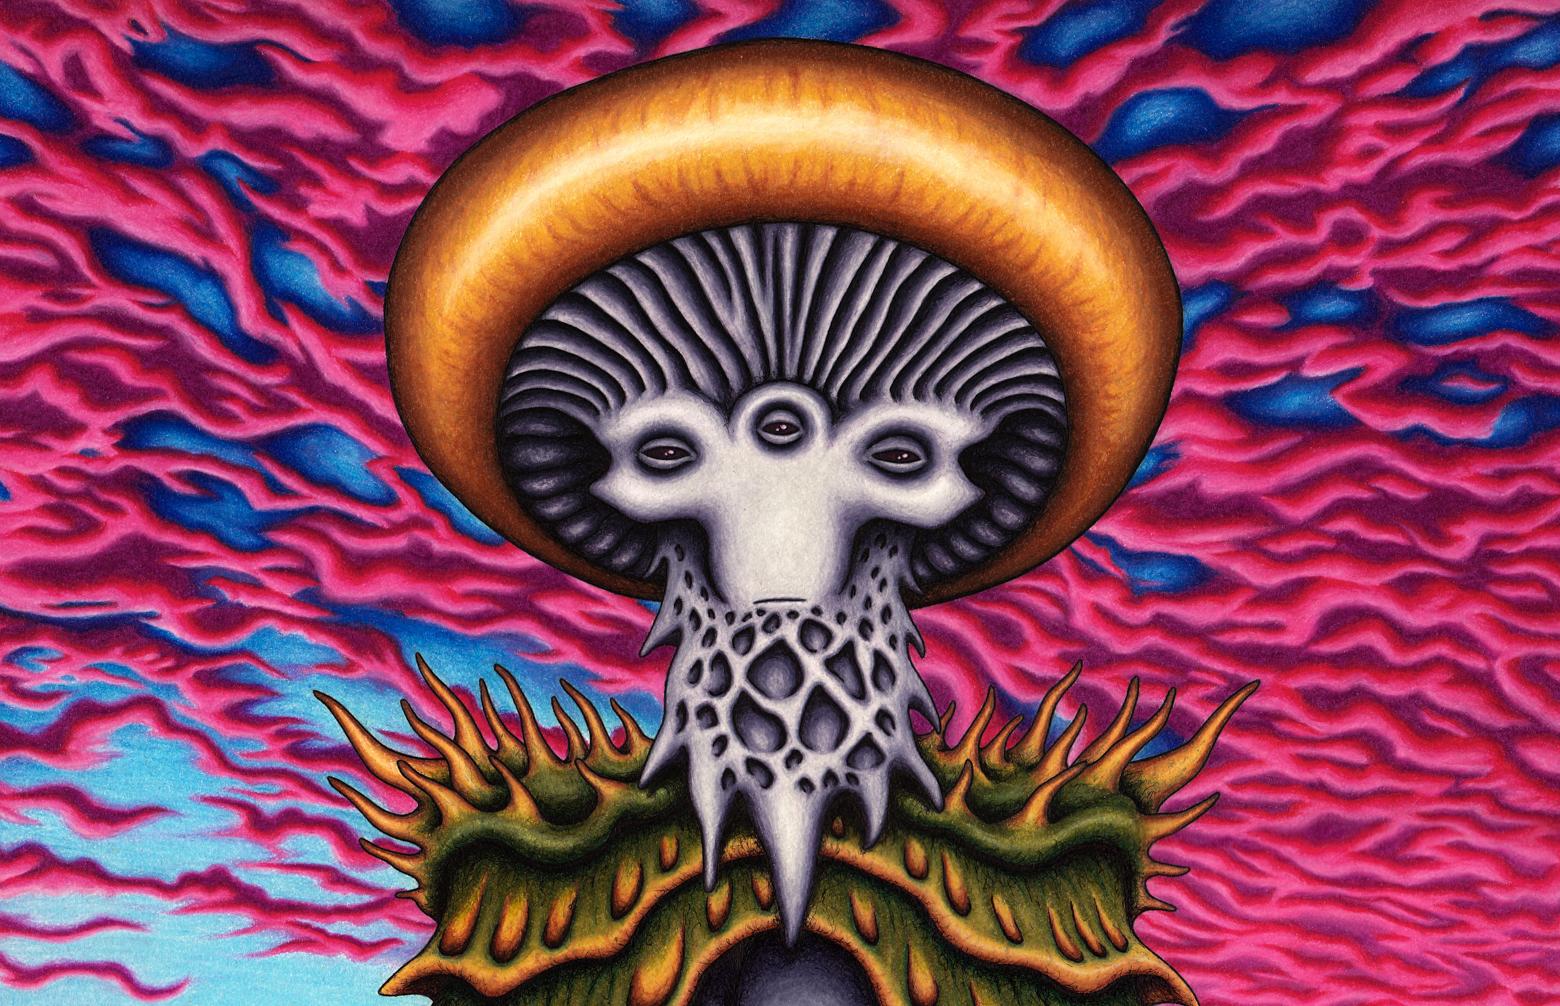 Mushroom Man by Brock Dallman